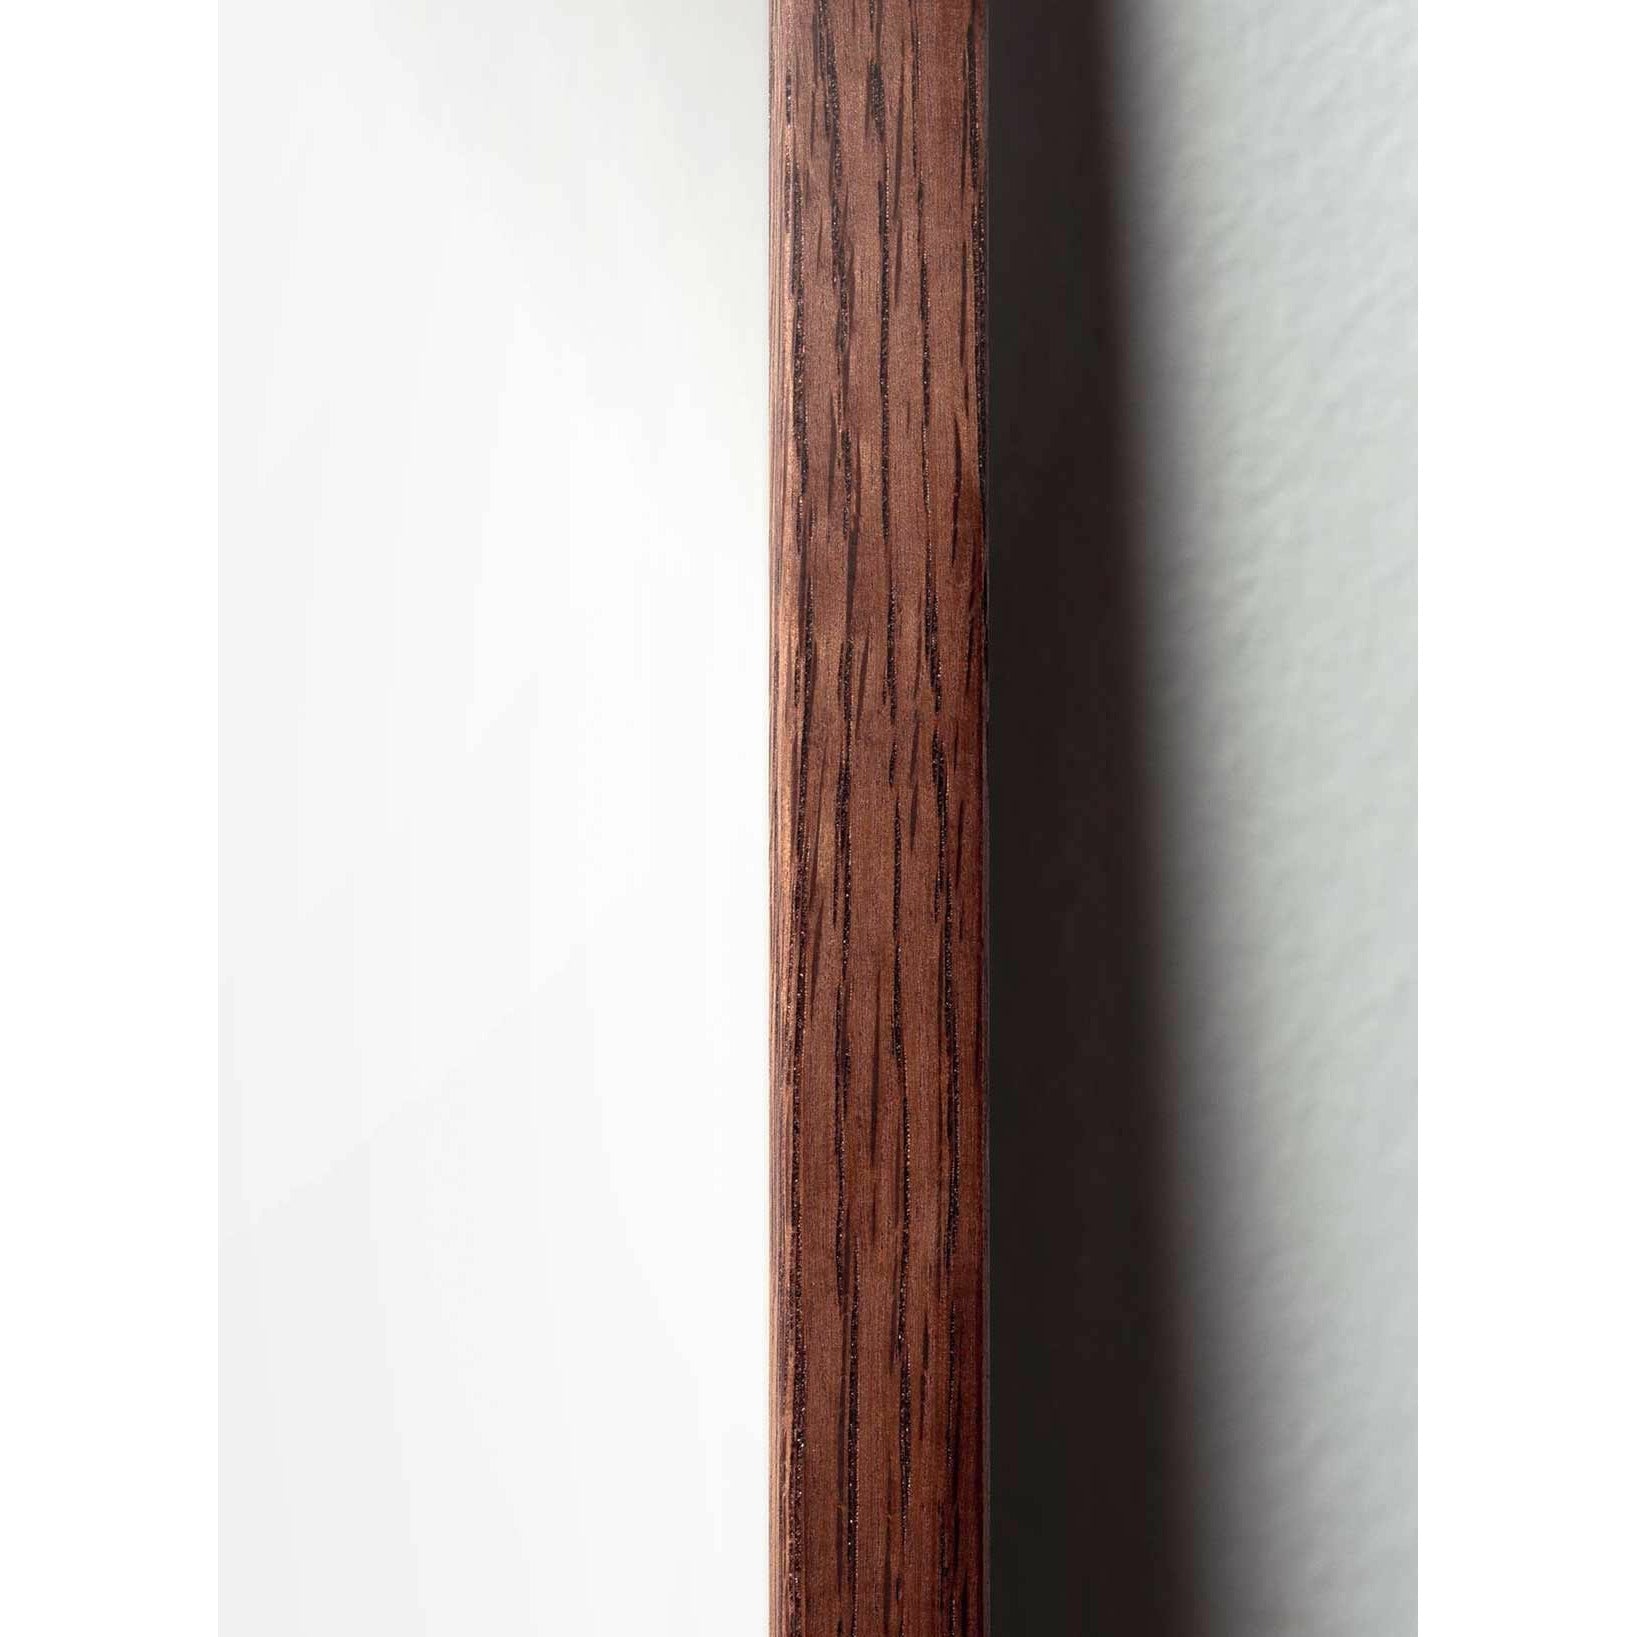 Póster de formato de cruce de huevo de creación, marco hecho de madera oscura de 30x40 cm, marrón